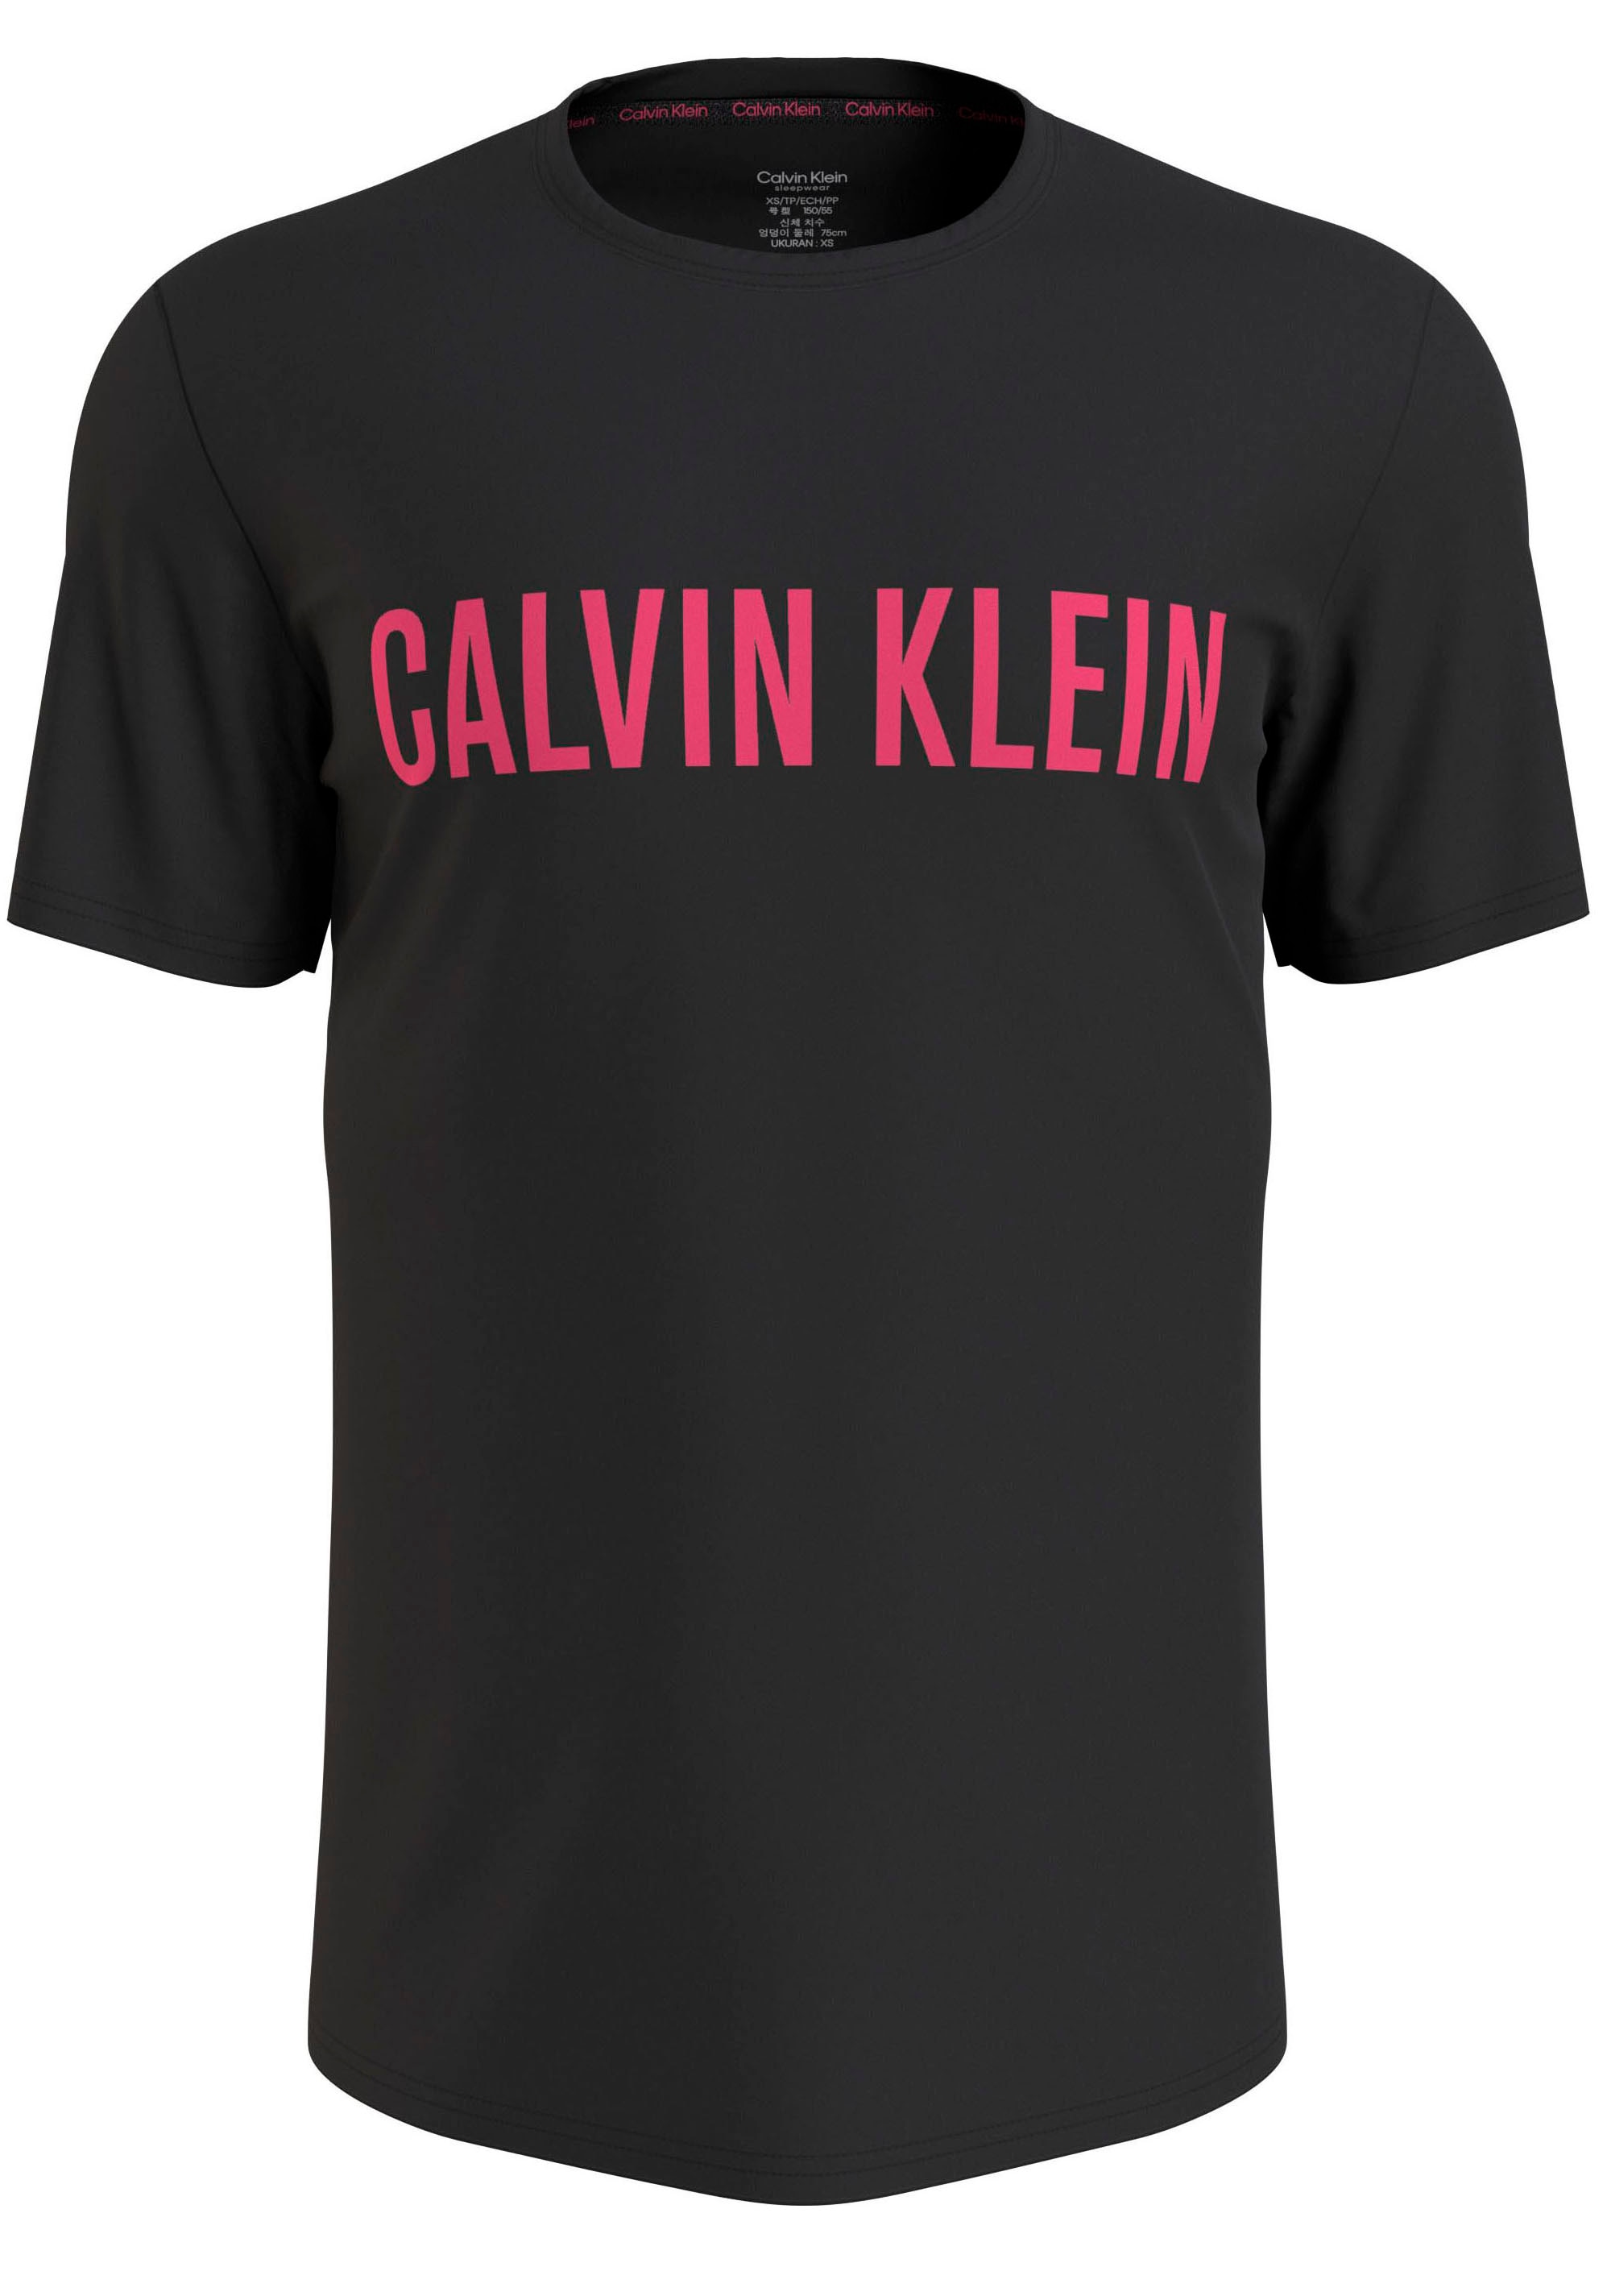 der NECK«, Klein auf T-Shirt online mit Druck Calvin »S/S CREW bestellen Brust